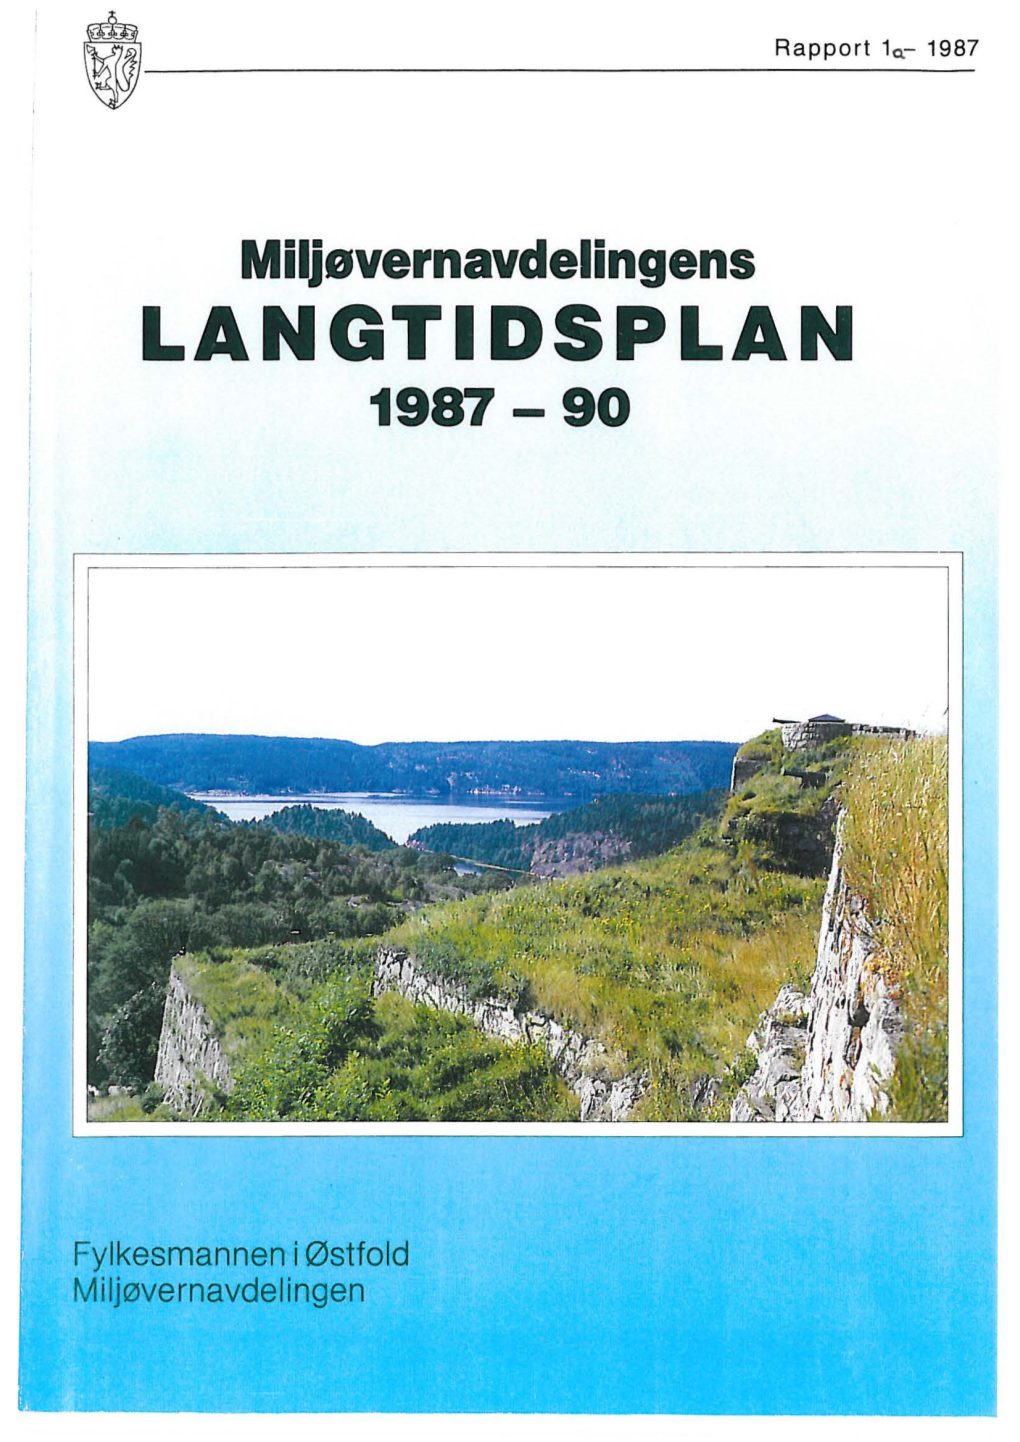 Langtidsplan 1987-90